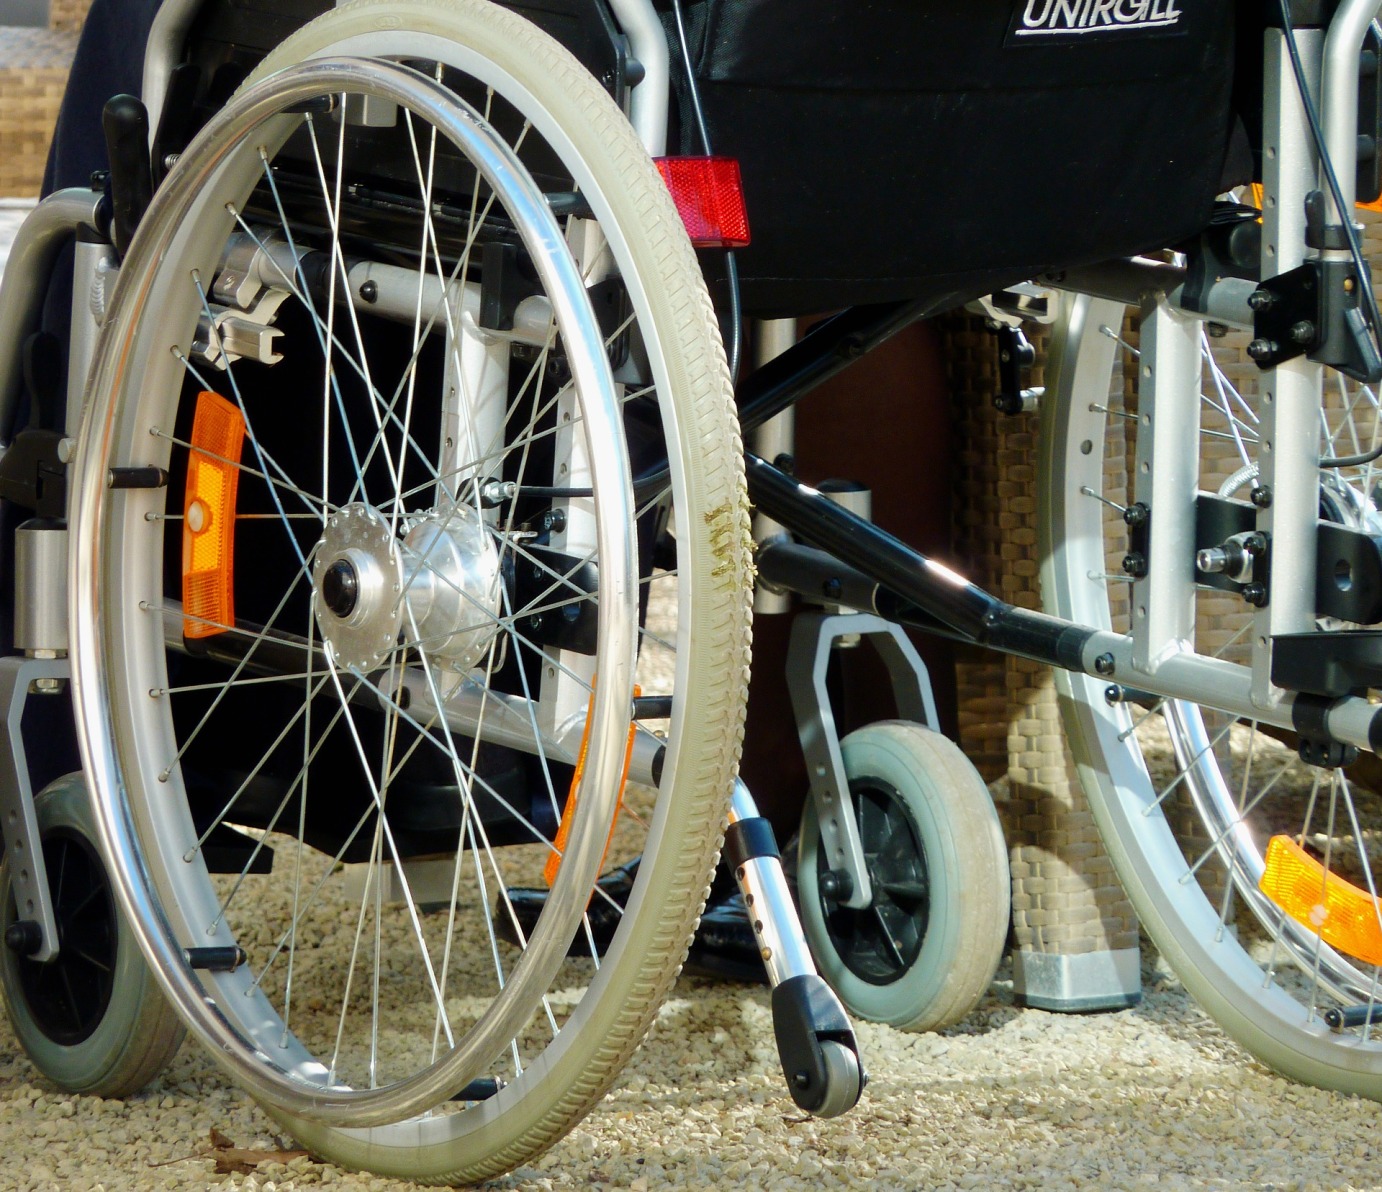 Rollstuhl (c) www.pixabay.com